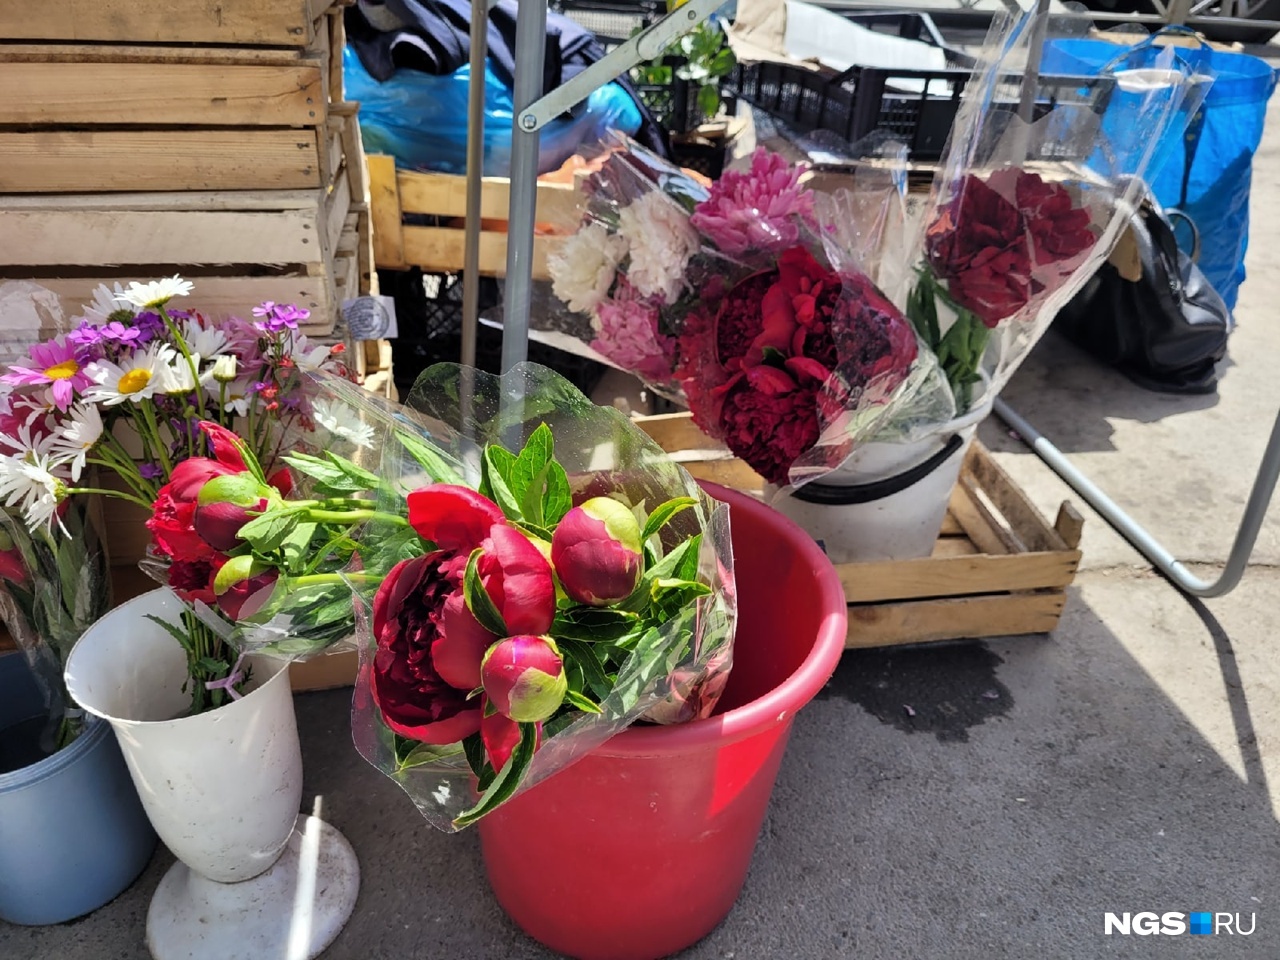 Цветочный сезон: на площади Калинина начали продавать пионы и люпины — цена букета зависит от покупателя